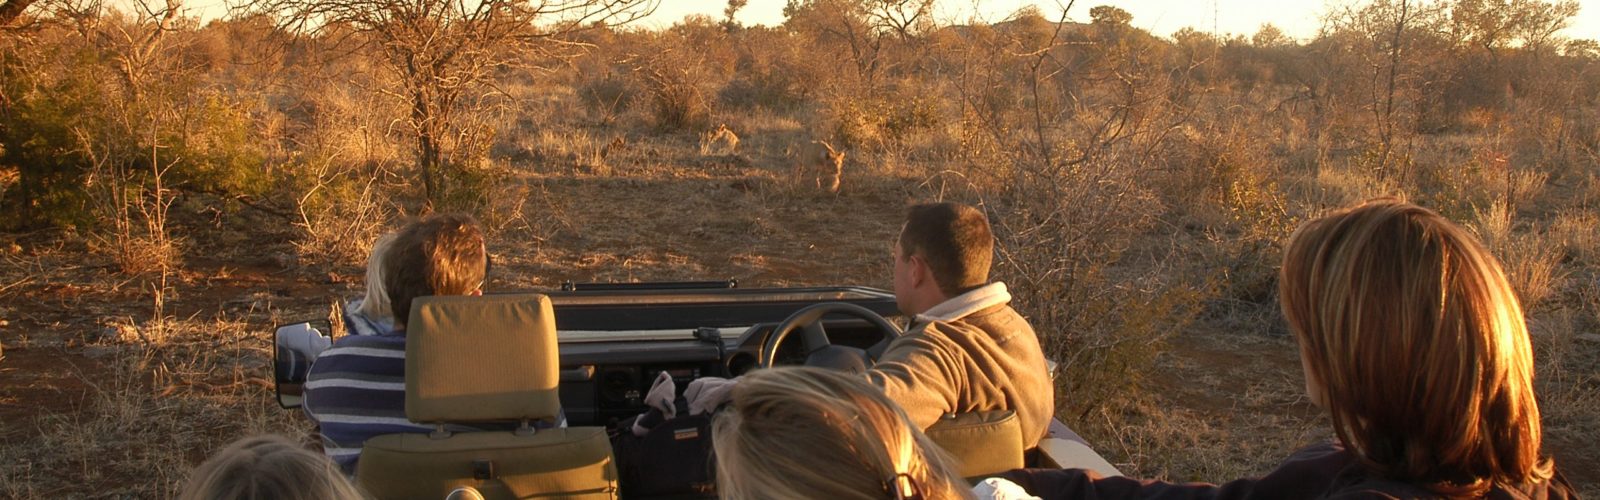 A family on Safari at Tuningi Lodge South Africa